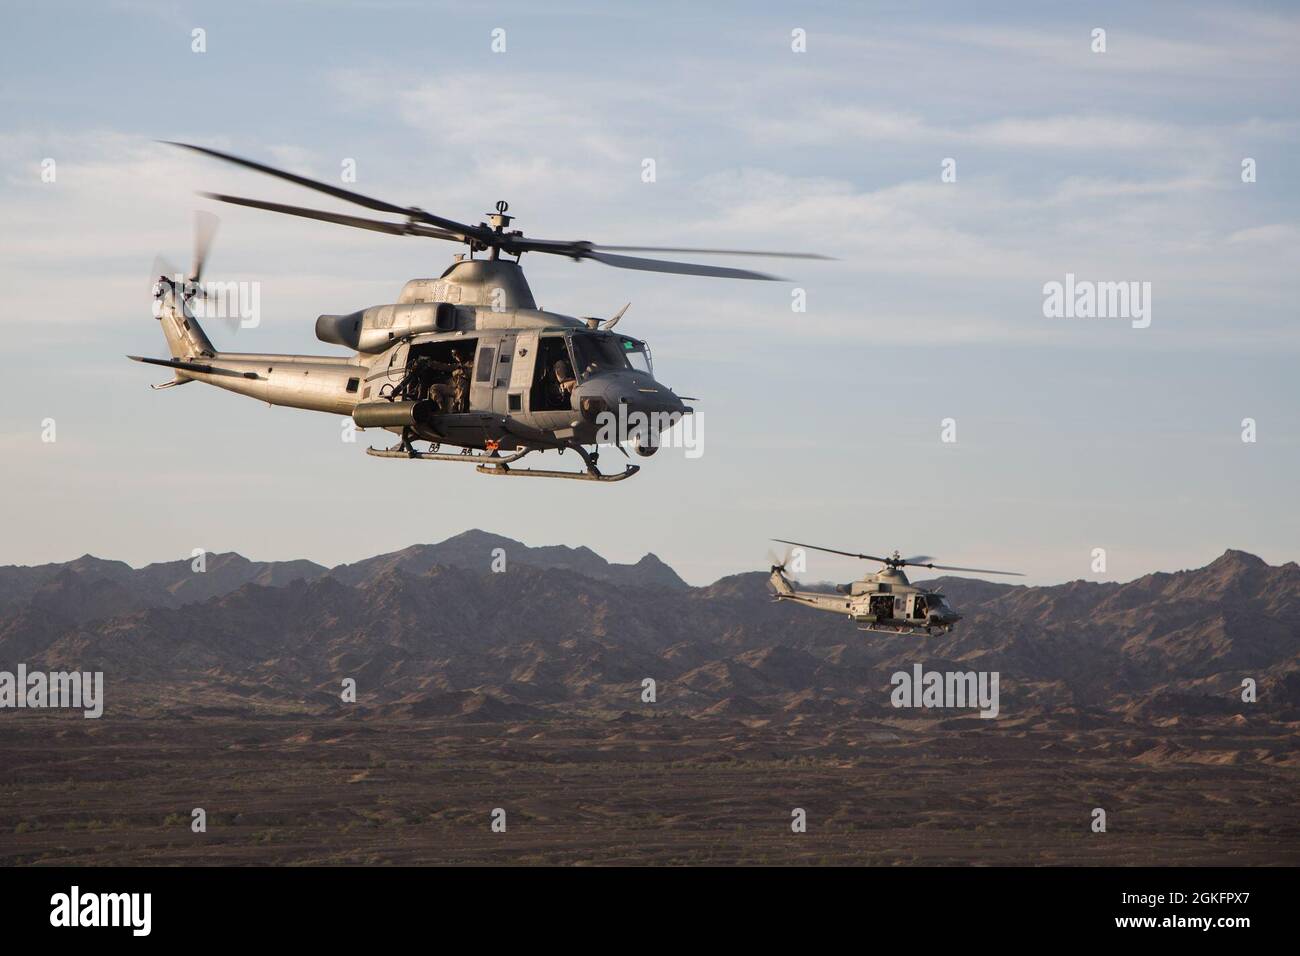 La aeronave Venom UH-1Y del Cuerpo de Marines de EE.UU., asignada al Escuadrón Uno de Armas y Tácticas de Aviación Marina (MAWTS-1), participa en un ejercicio de alcance de blancos en movimiento, en apoyo del curso de Instructor de Armas y Tácticas (WTI) 2-21, cerca del aeródromo Blue Mountain, California, 10 de abril de 2021. El curso WTI es un evento de capacitación de siete semanas organizado por MAWTS-1, que proporciona capacitación táctica avanzada estandarizada y certificación de las calificaciones de instructores de unidad para apoyar la capacitación y preparación de la aviación marina, y ayuda en el desarrollo y empleo de armas y tácticas de aviación. Foto de stock